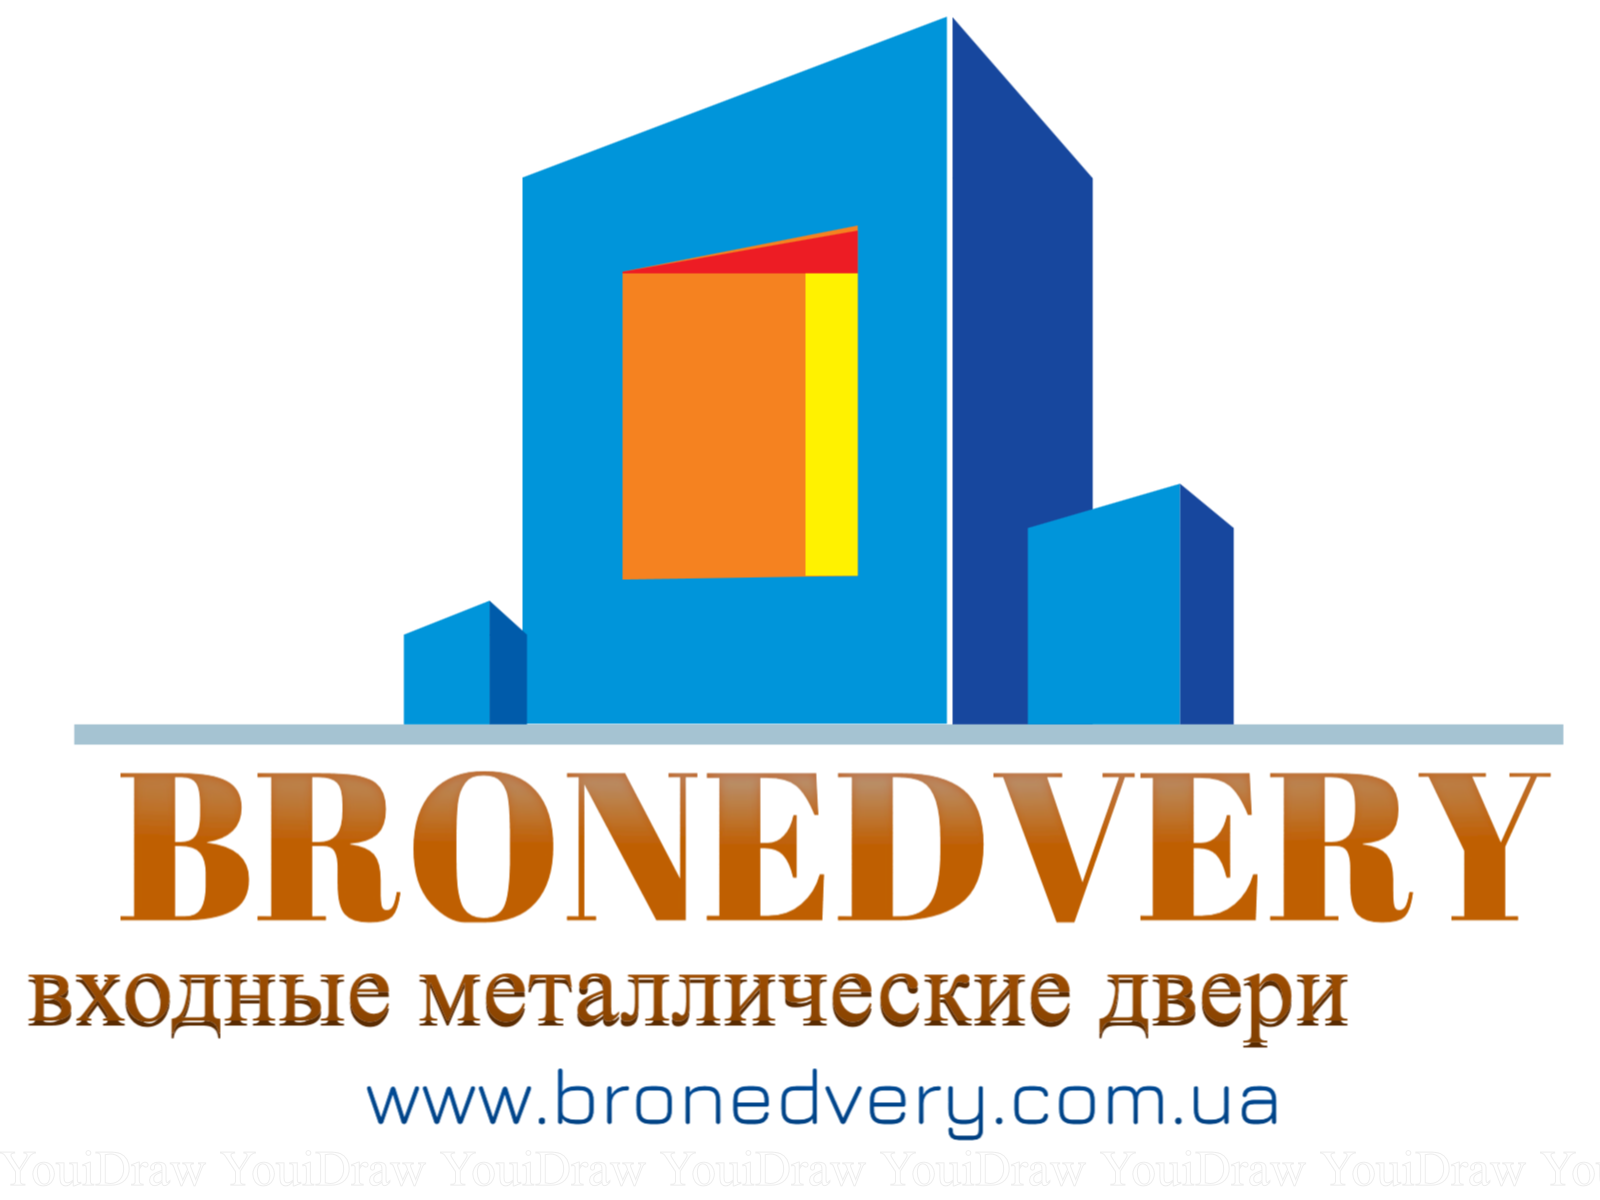 Bronedvery